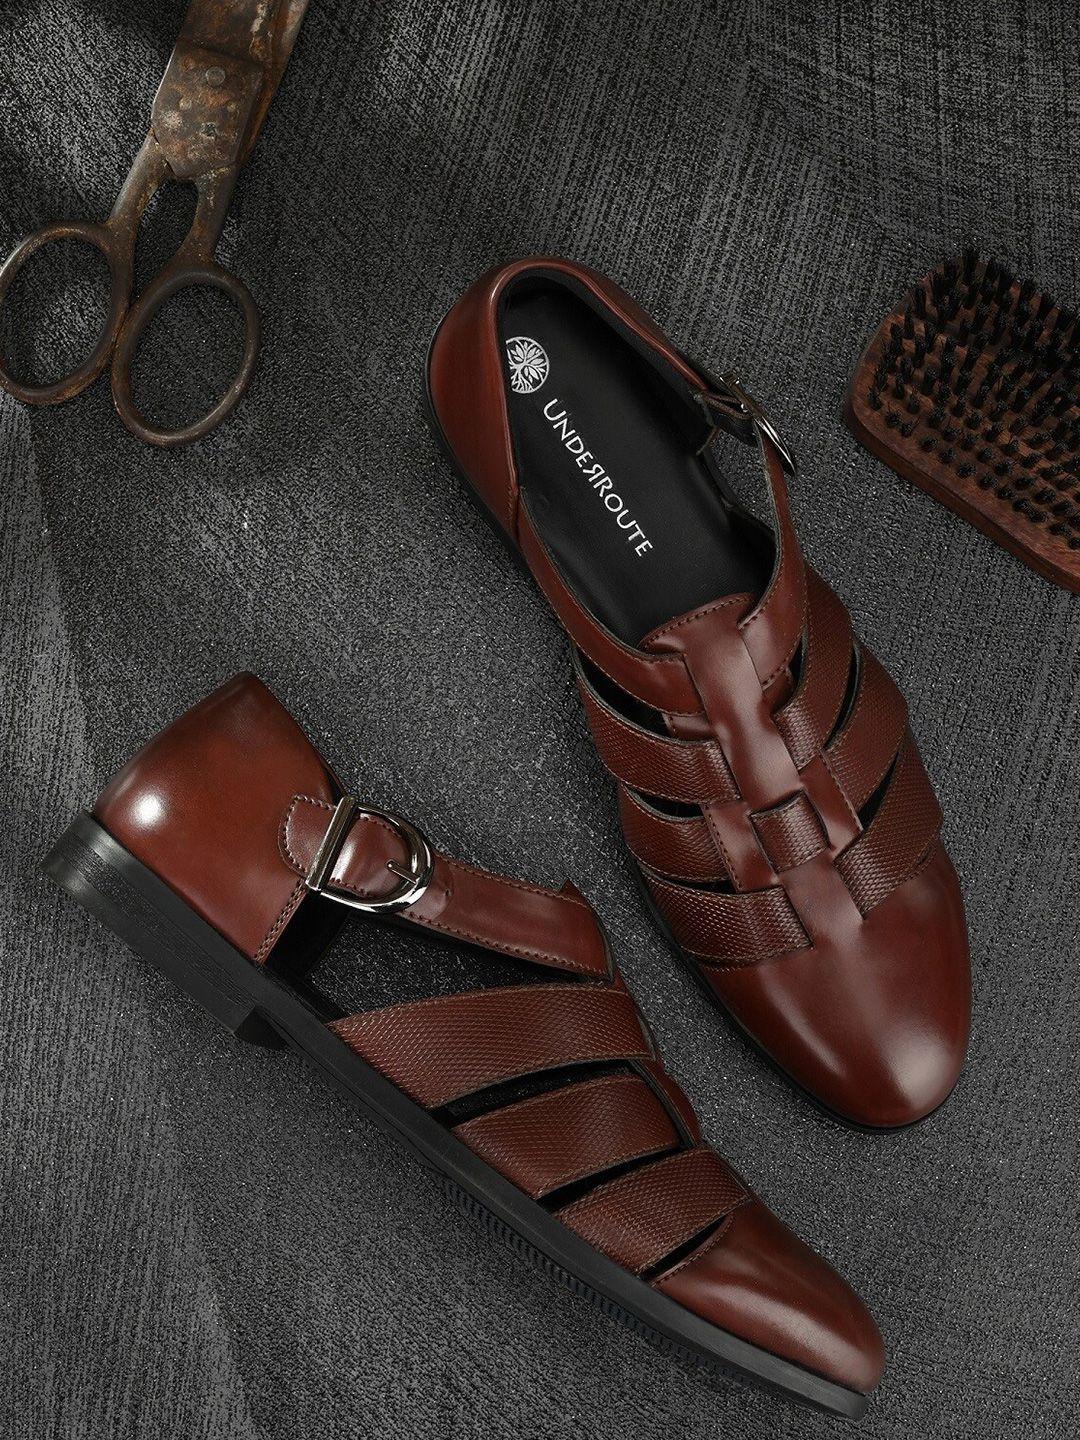 underroute-men-burgundy-shoe-style-sandals